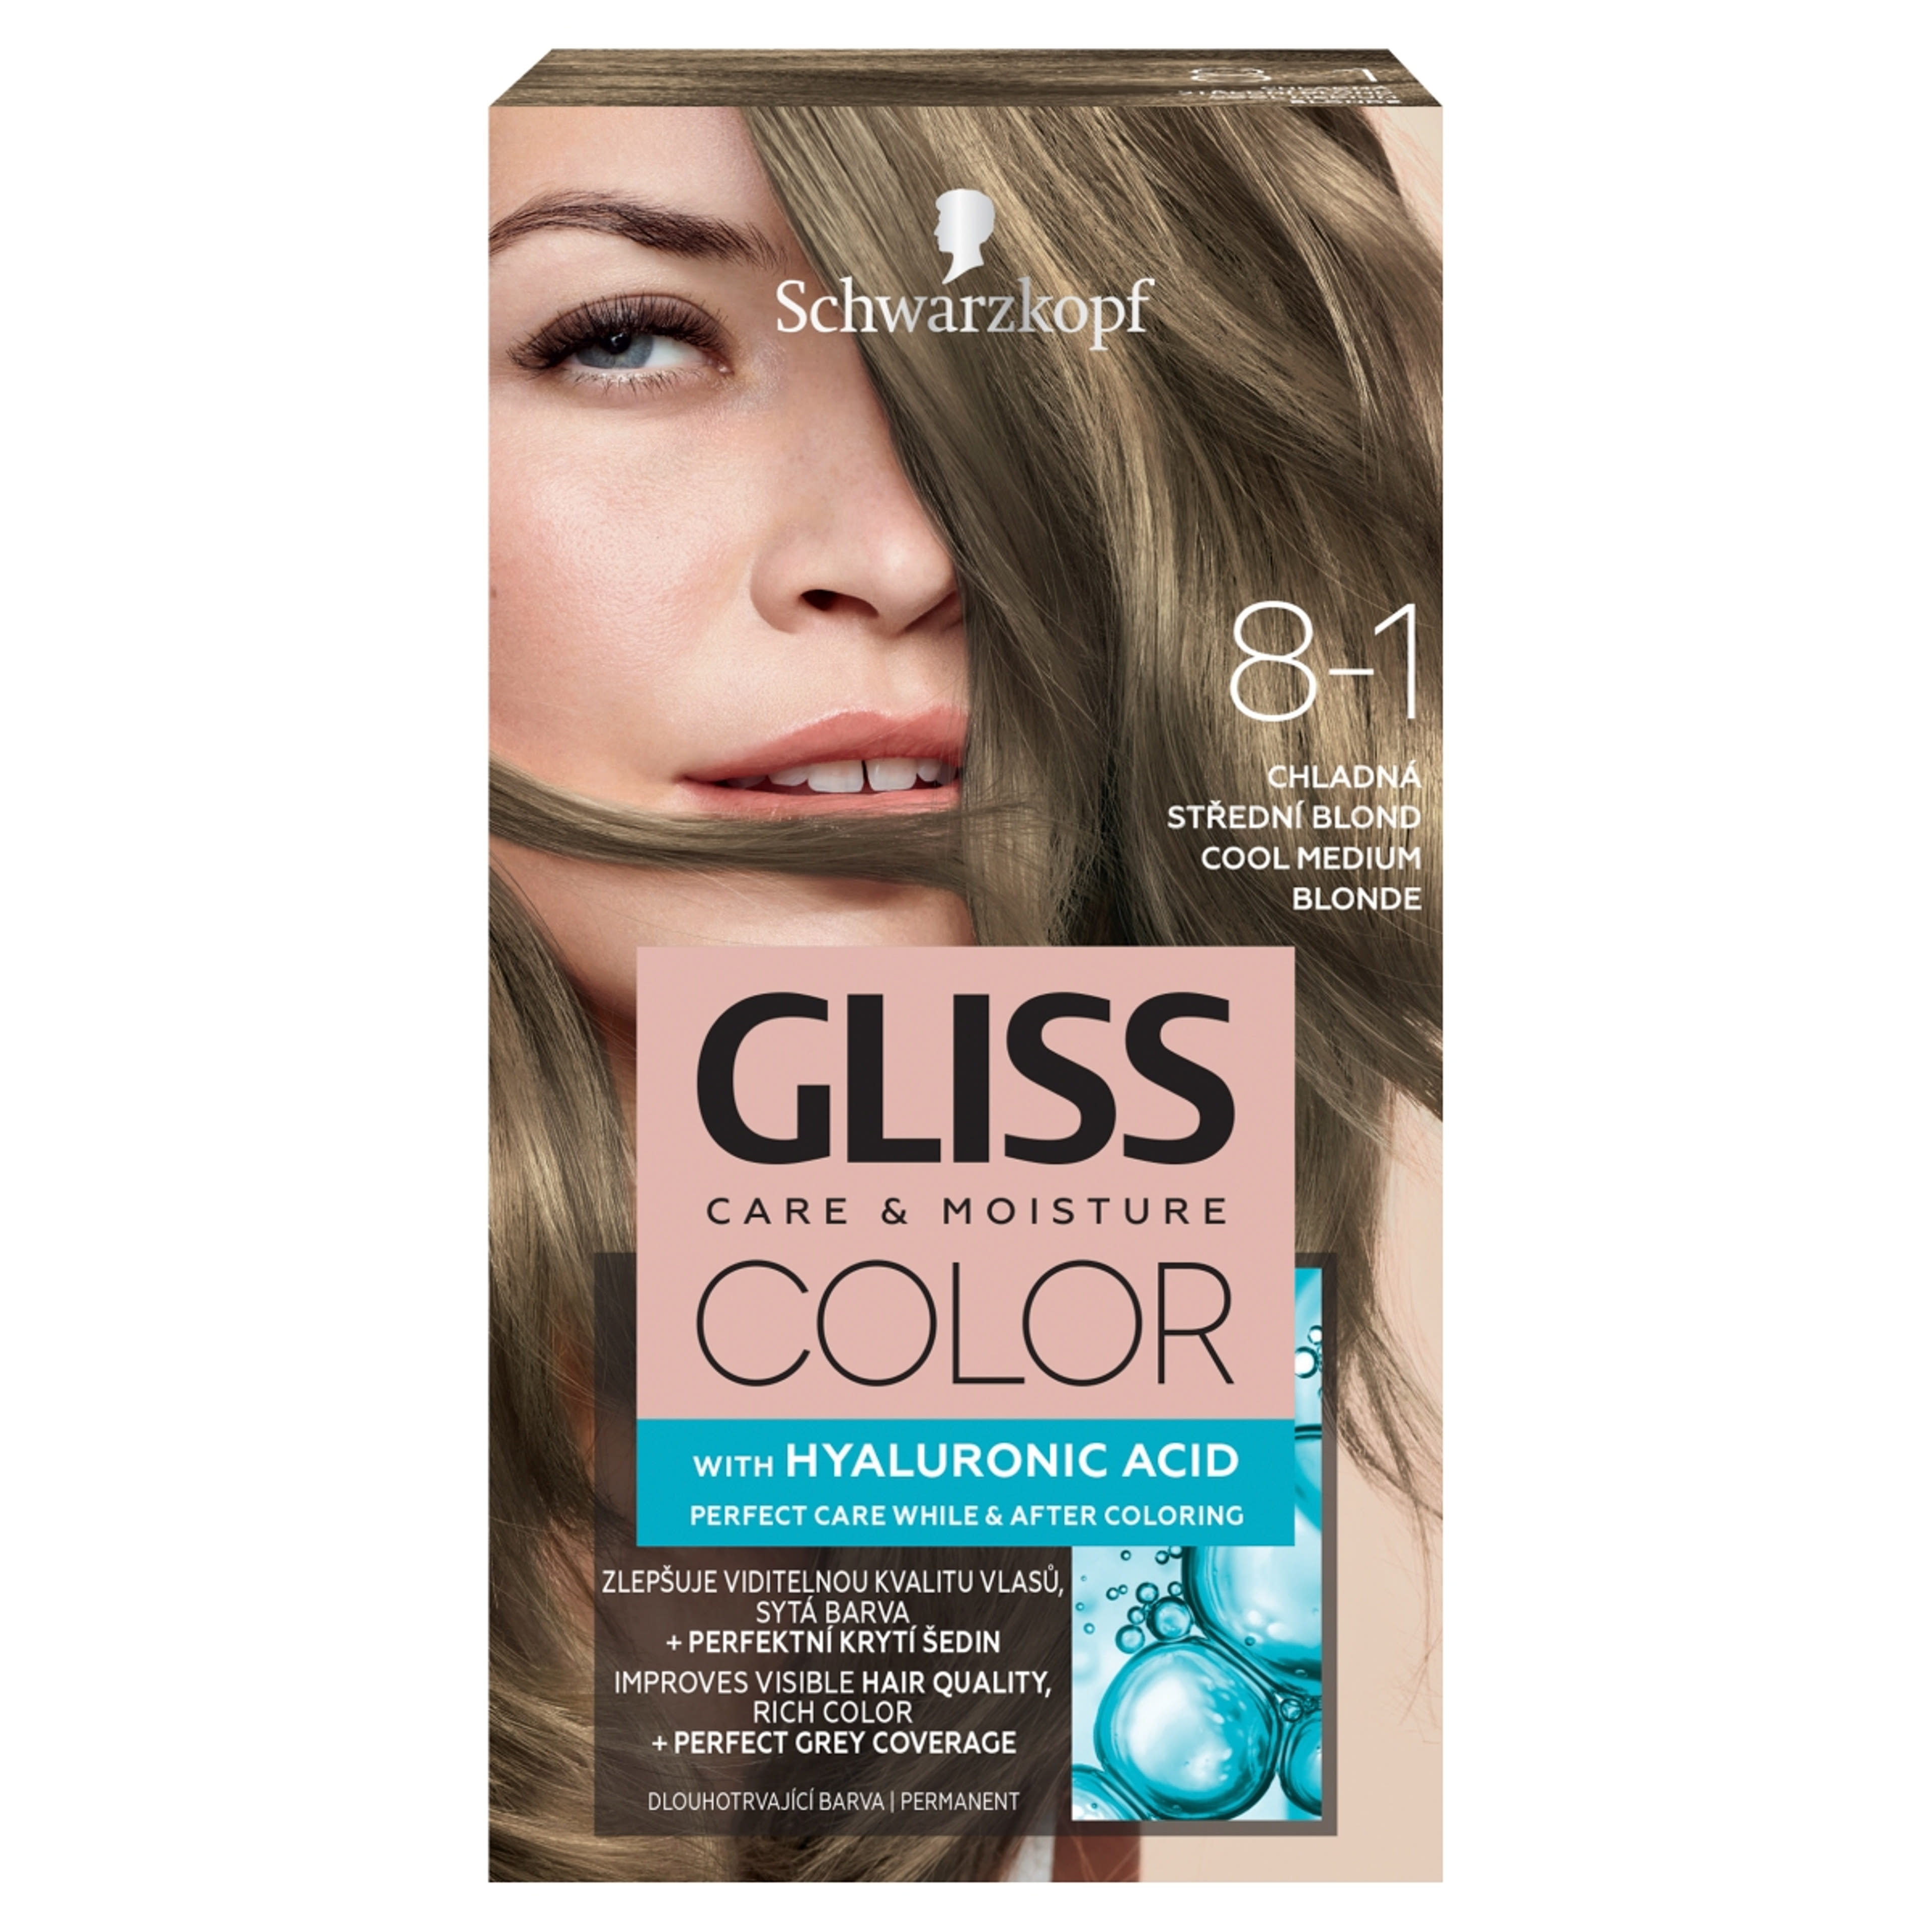 Gliss Color tartós hajfesték 8-1 Hűvös középszőke - 1 db